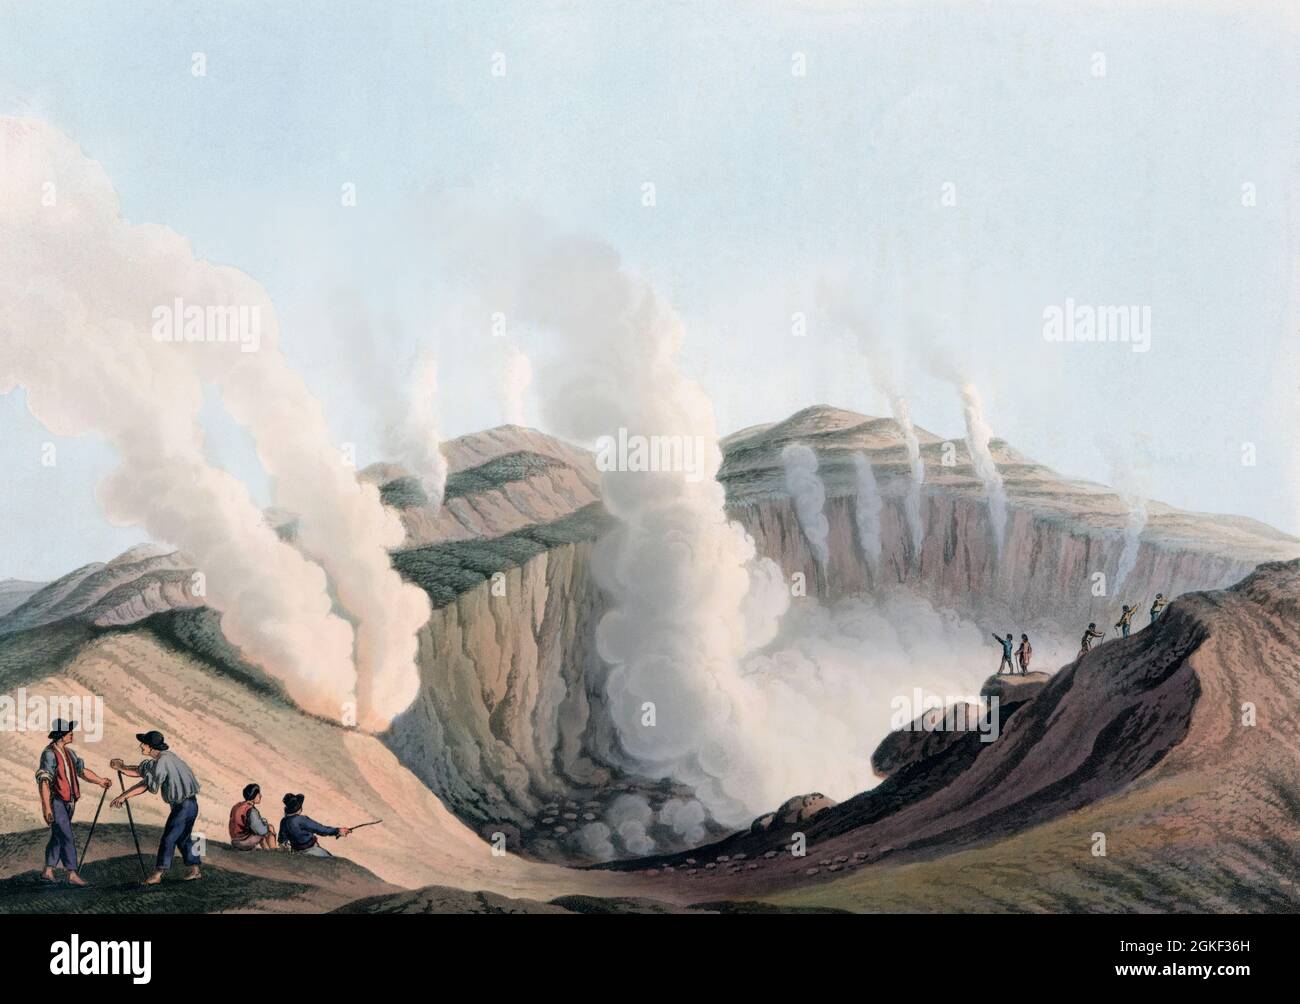 Cratère sur Vulcano, une île volcanique italienne dans la mer Tyrrhénienne. La photo montre probablement le Gran Cratere. Vulcano est l'hôte de l'un des quatre volcans actifs en Italie. La dernière éruption sur Vulcano a eu lieu de 1888 à 1890. Après une gravure du début du XIXe siècle par William Watts d'une oeuvre de Luigi Mayer. Banque D'Images